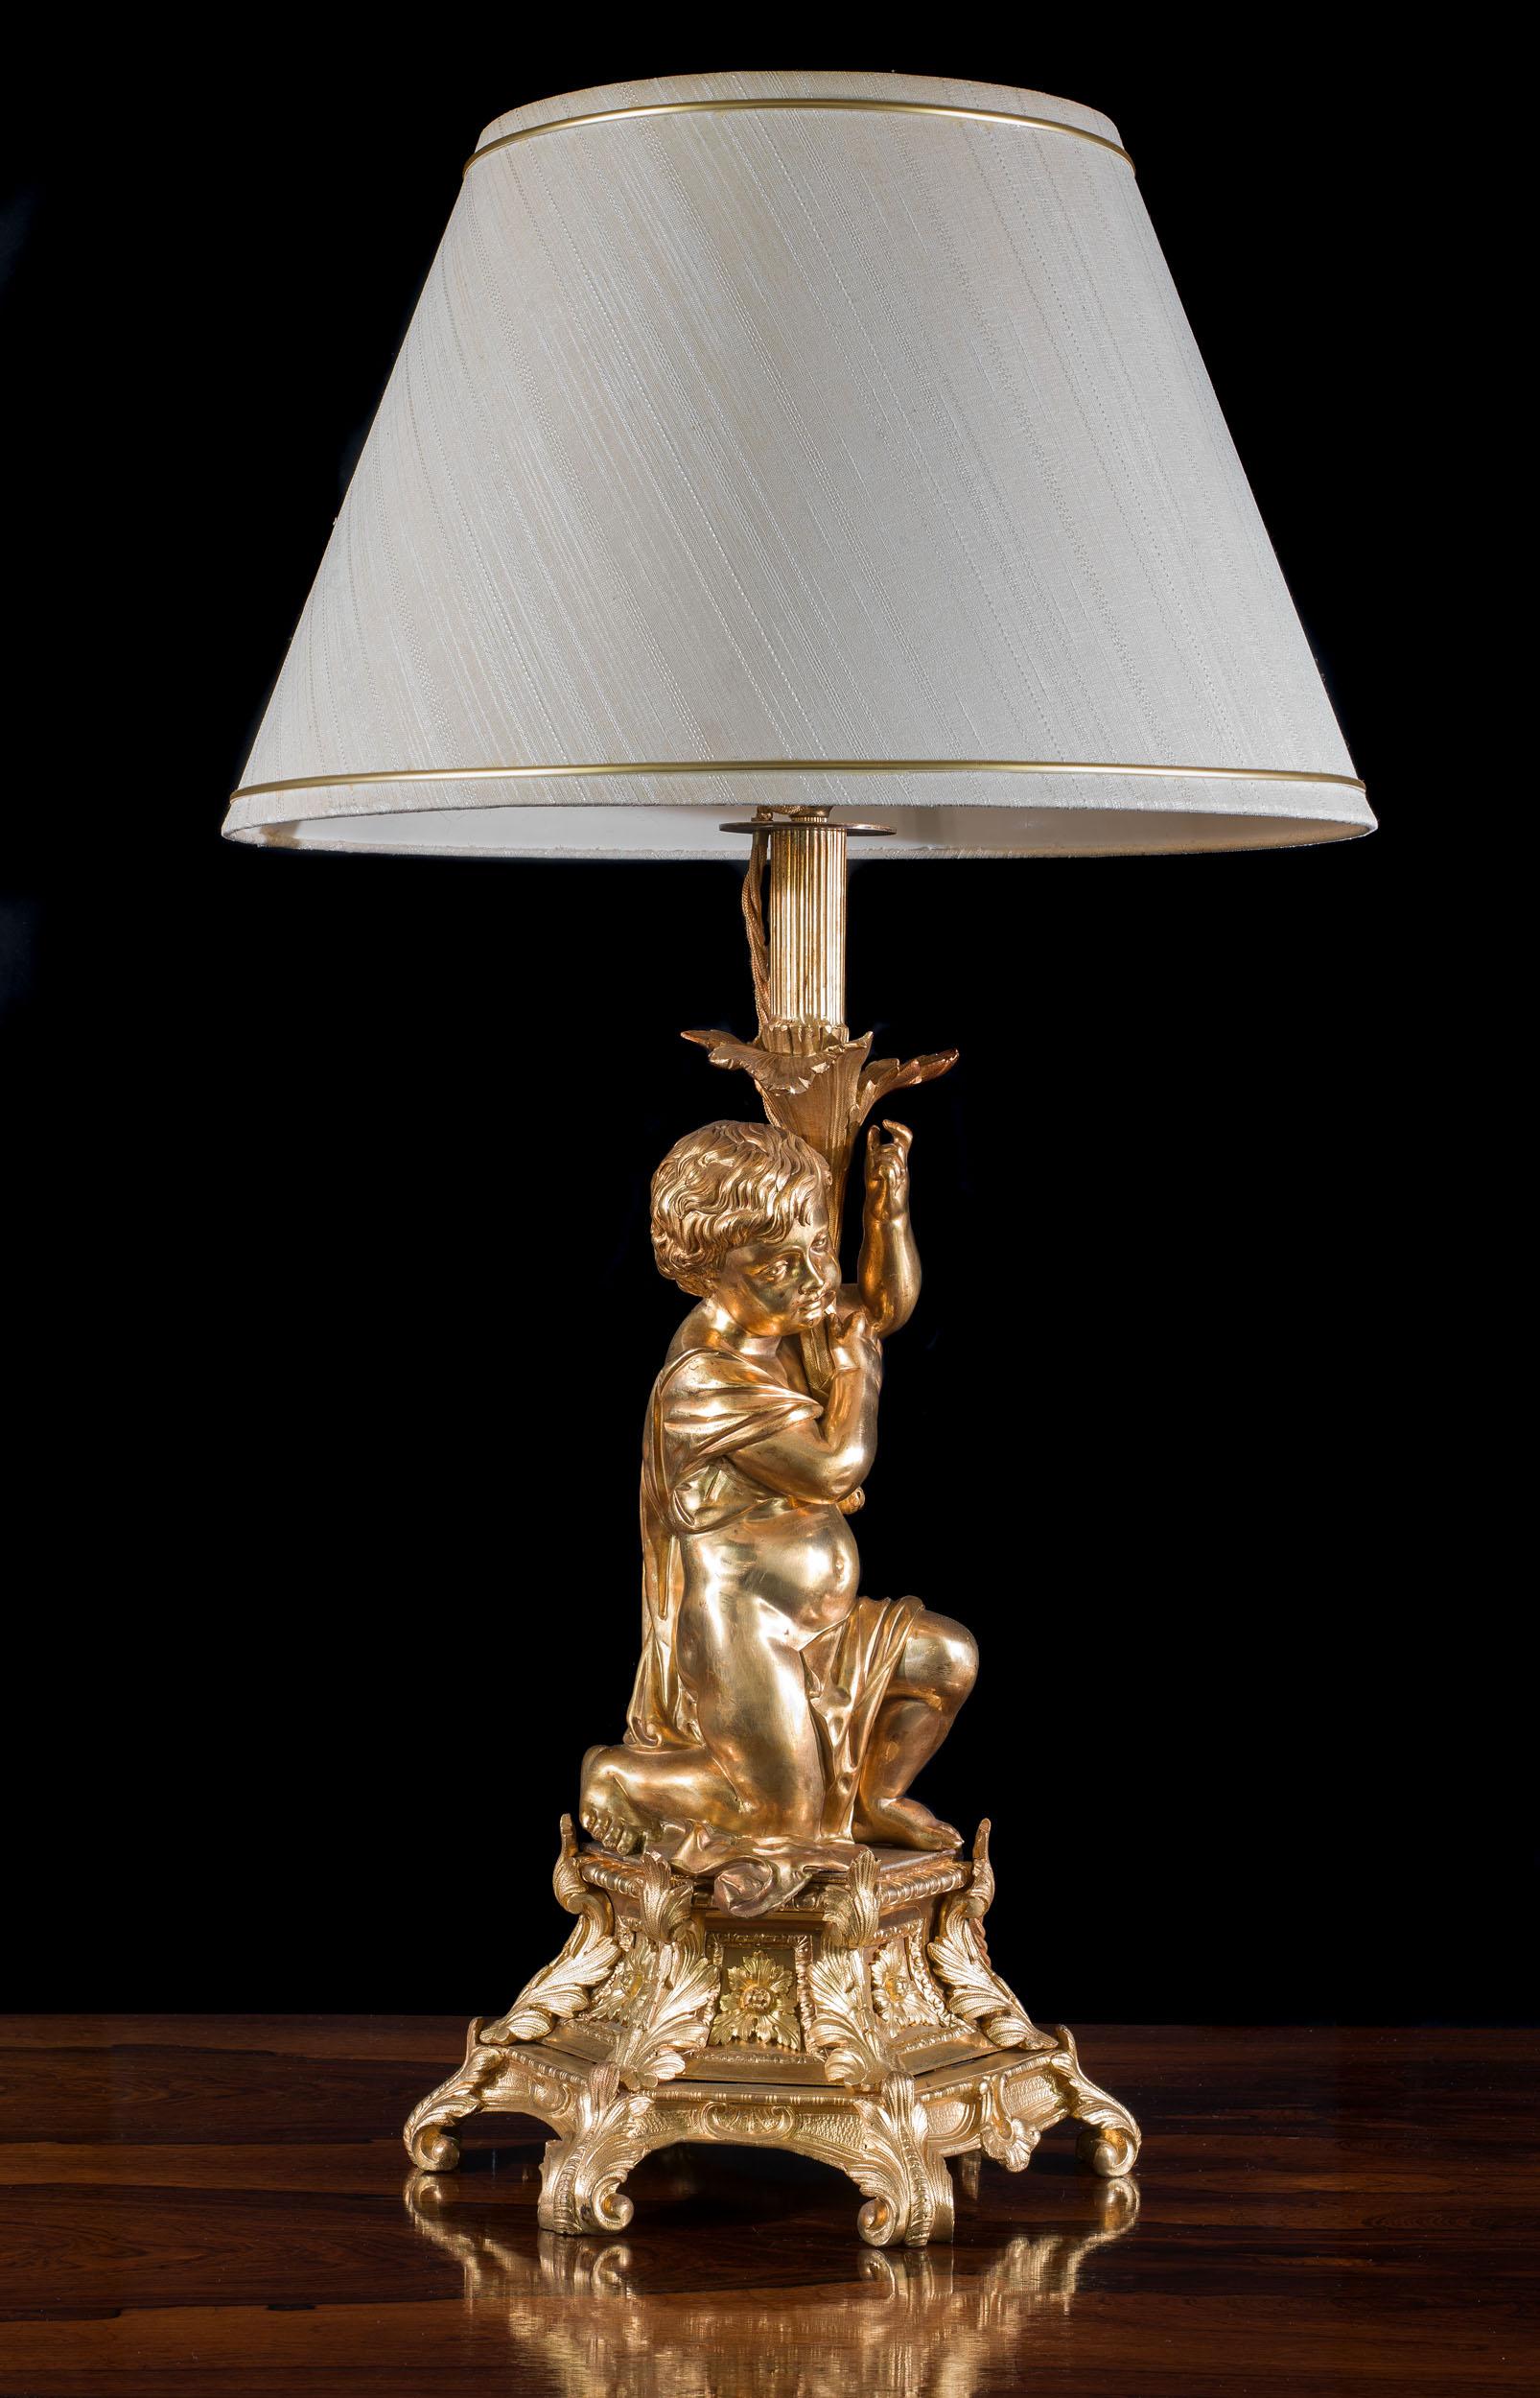 Eine große und verzierte vergoldete Bronzelampe, modelliert als Putto, der die Lampenfassung in die Höhe hält, während er auf einem sechseckigen Sockel kniet, der mit Rokoko-Blattdekor verziert ist.

Französisch, um 1880.